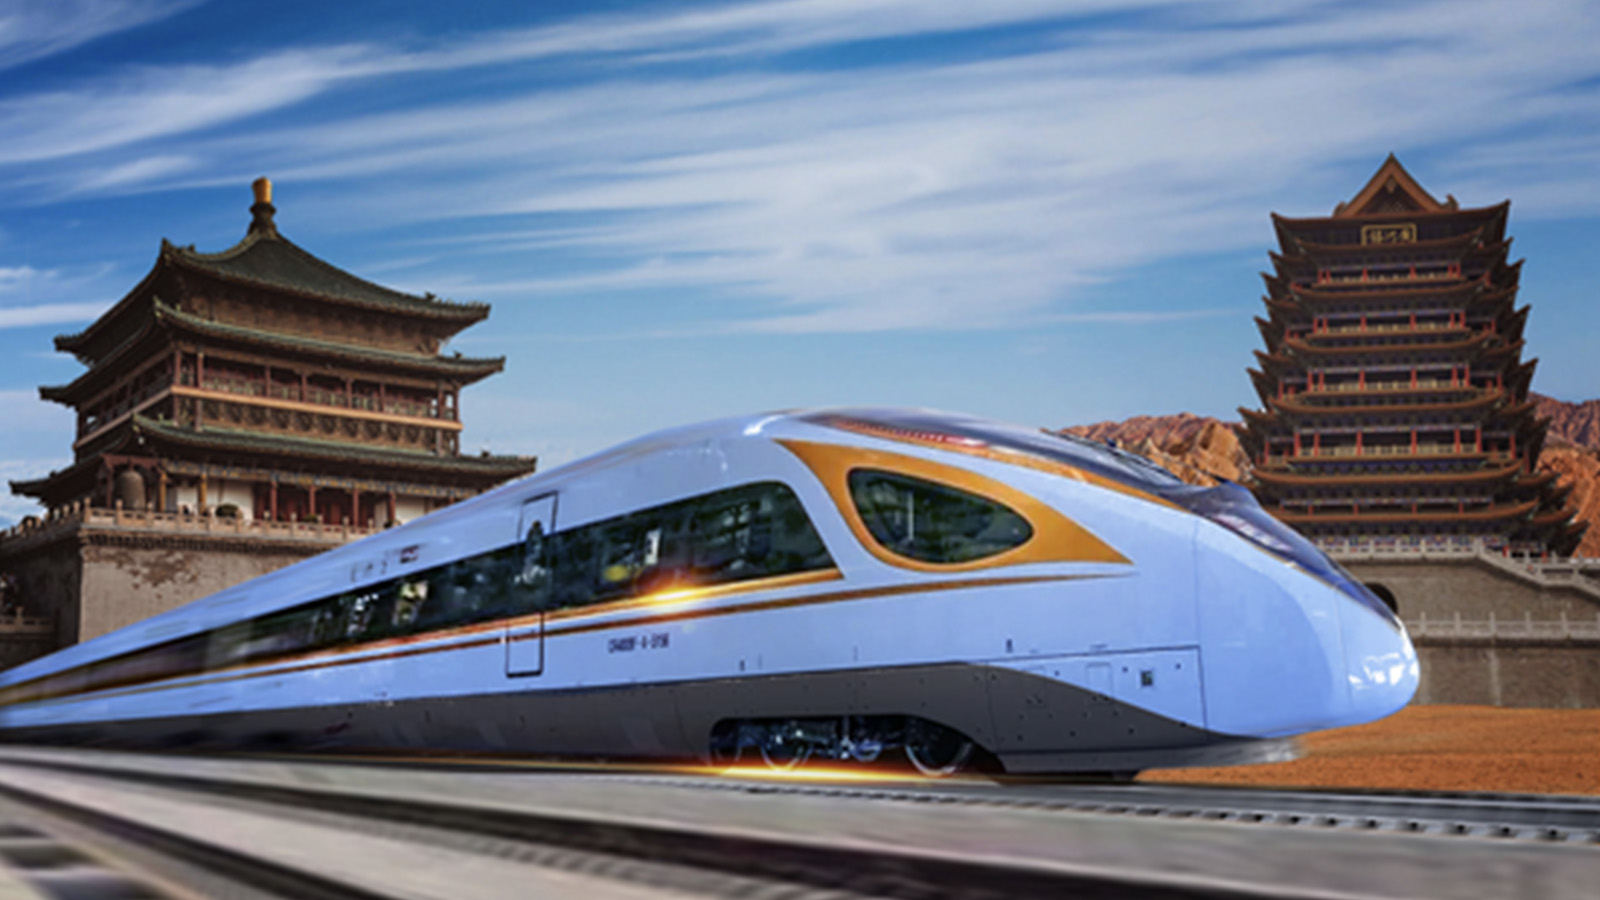 Live Chinas Yinchuan Xian High Speed Railway Begins Service Cgtn